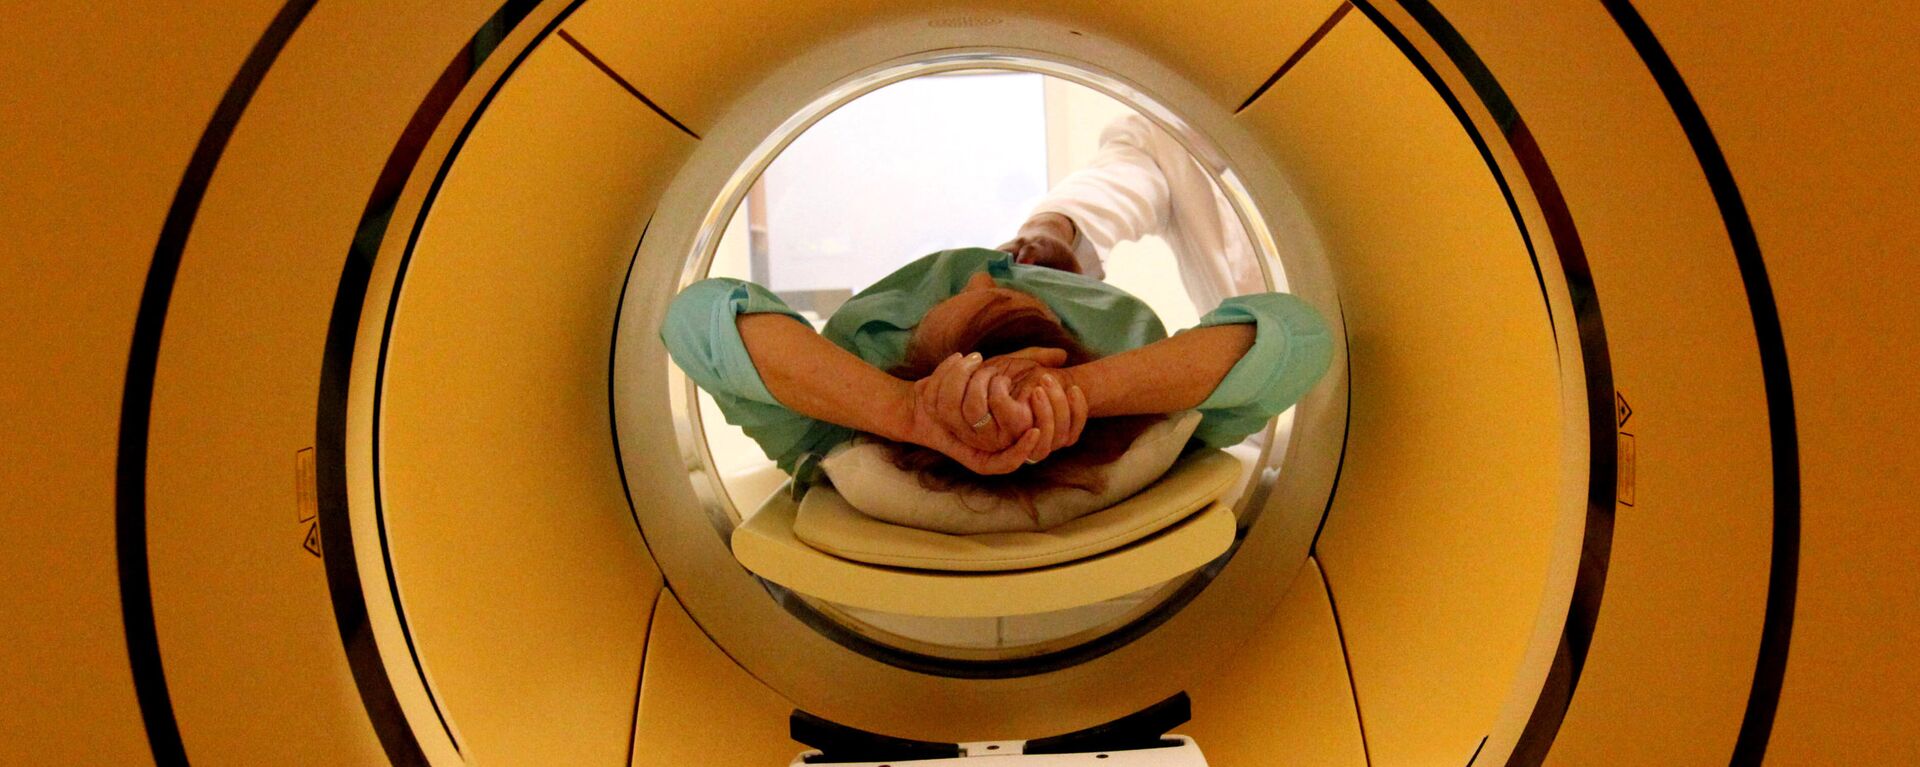 Пациент во время обследования c помощью томографа, архивное фото - Sputnik Латвия, 1920, 05.03.2019